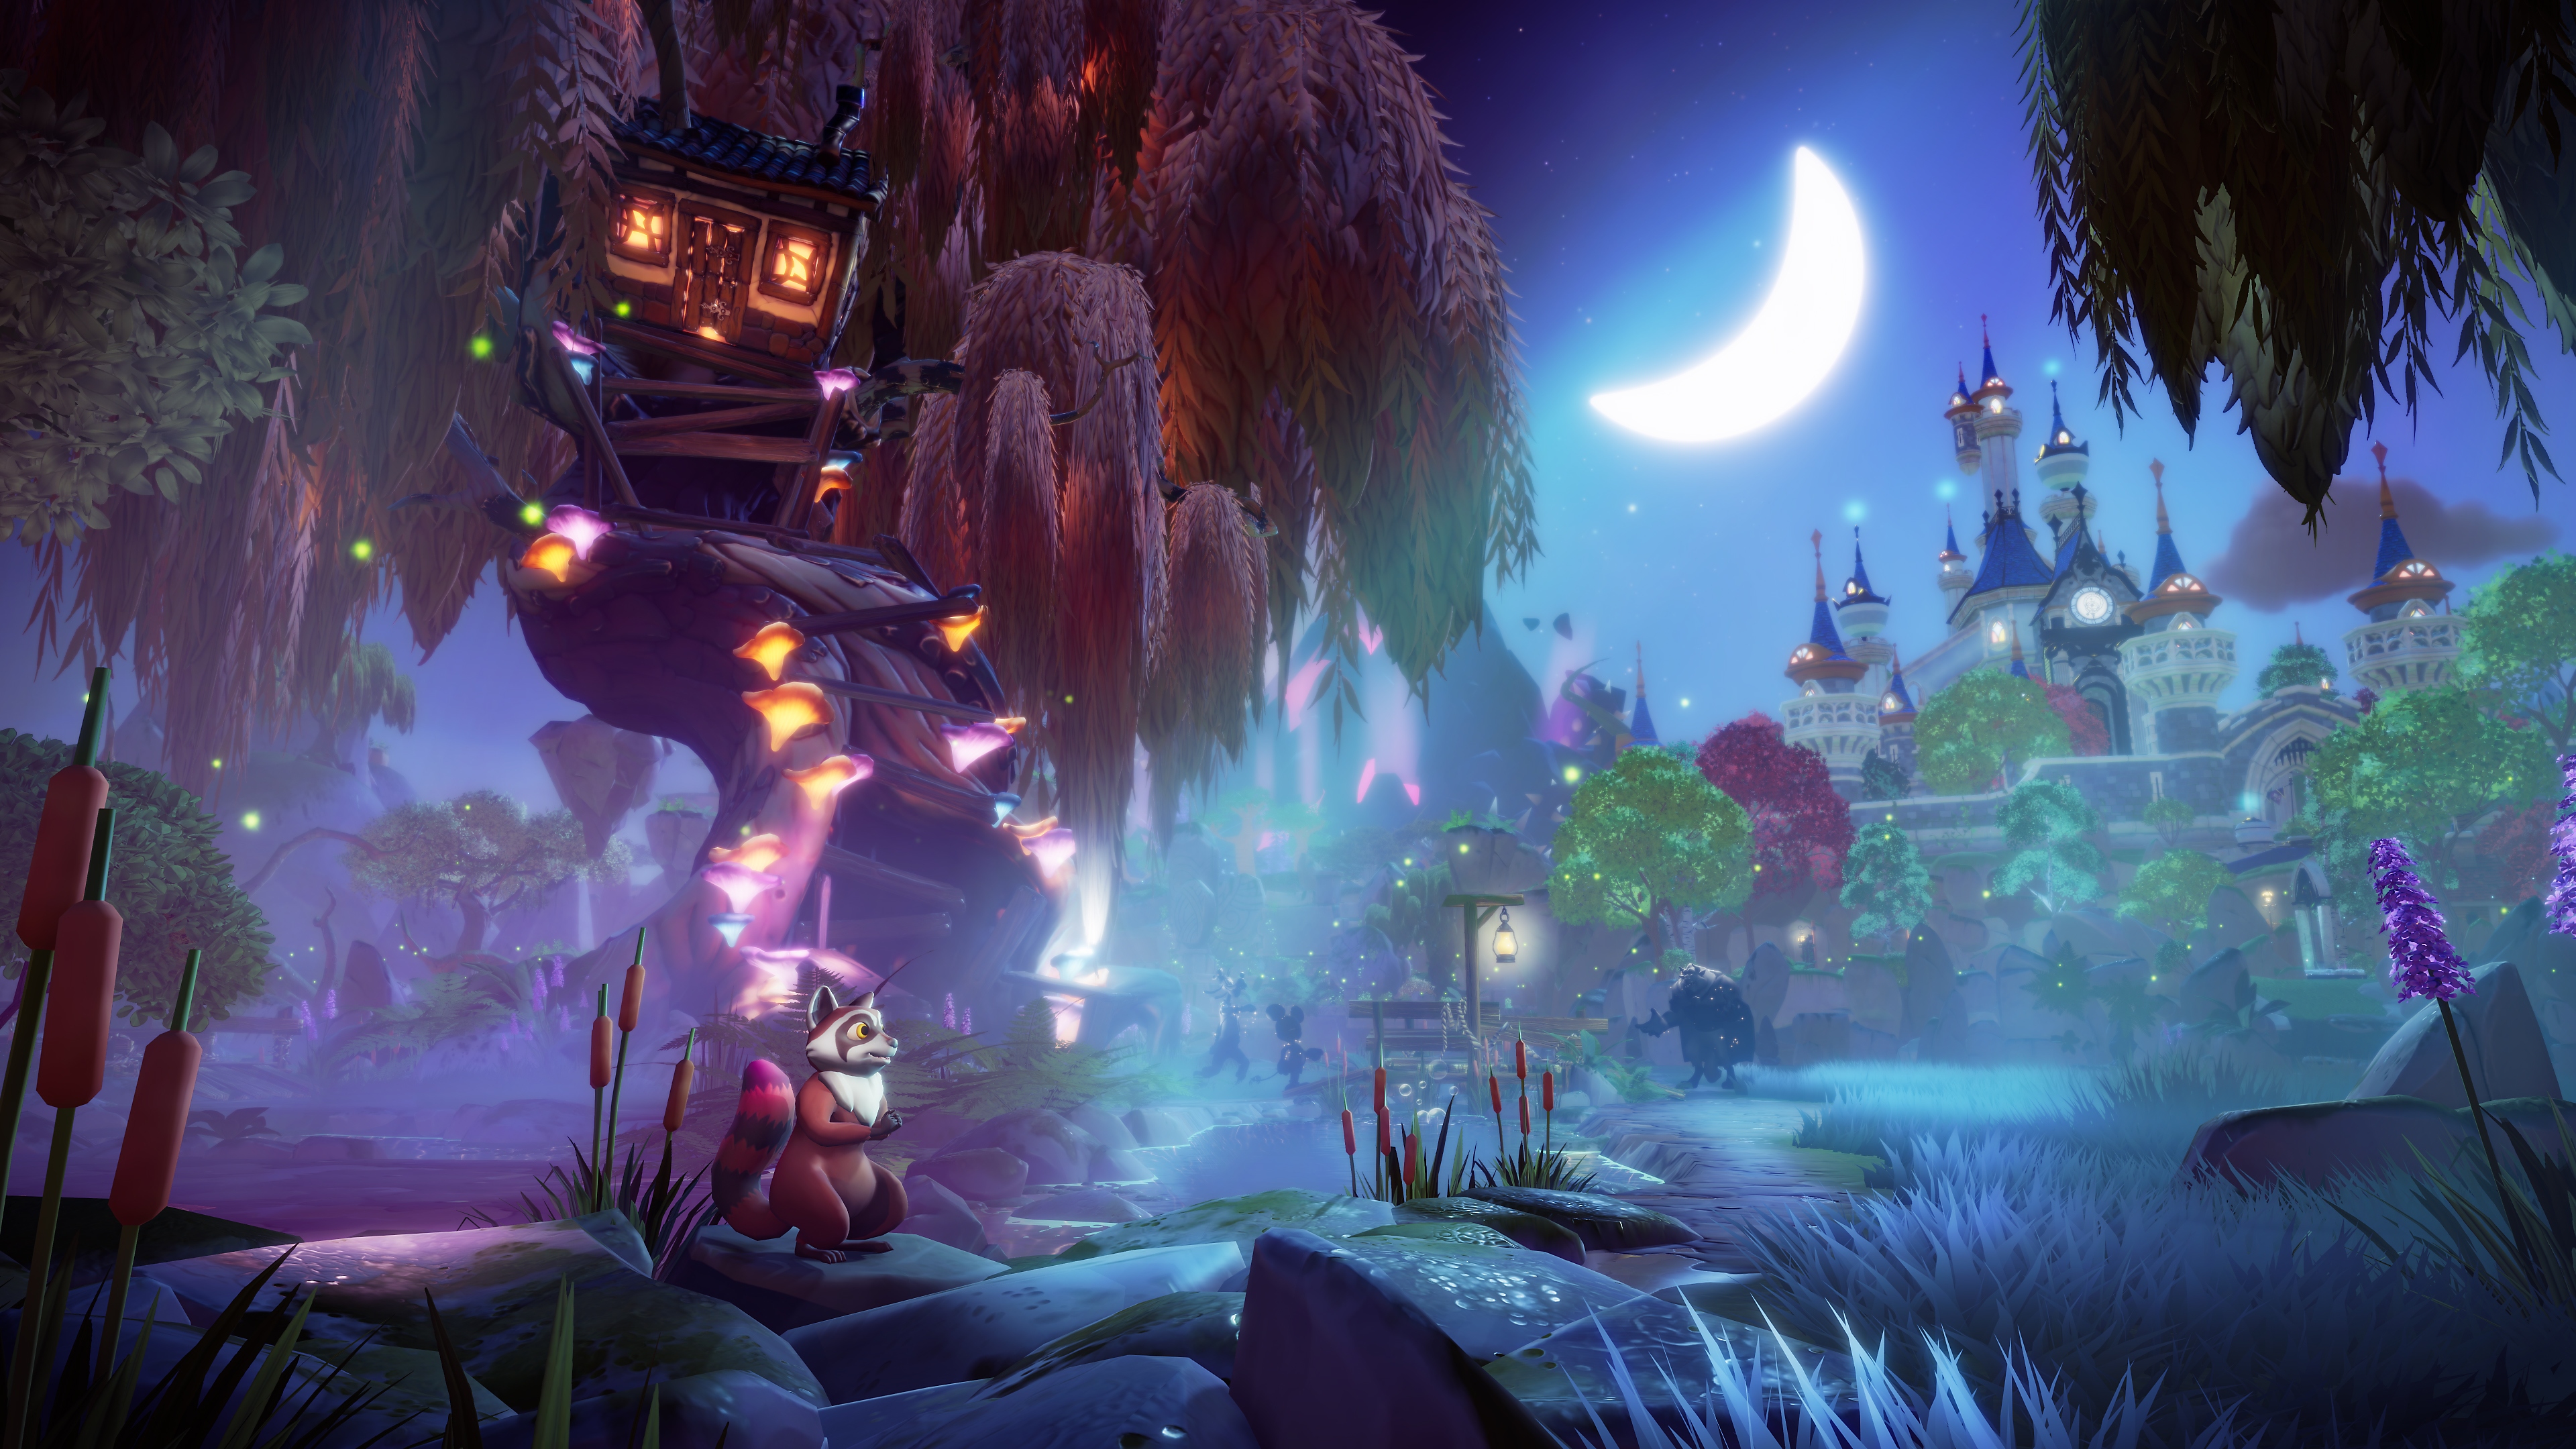 Disney Dreamlight Valley - Capture d'écran d'une scène au clair de lune